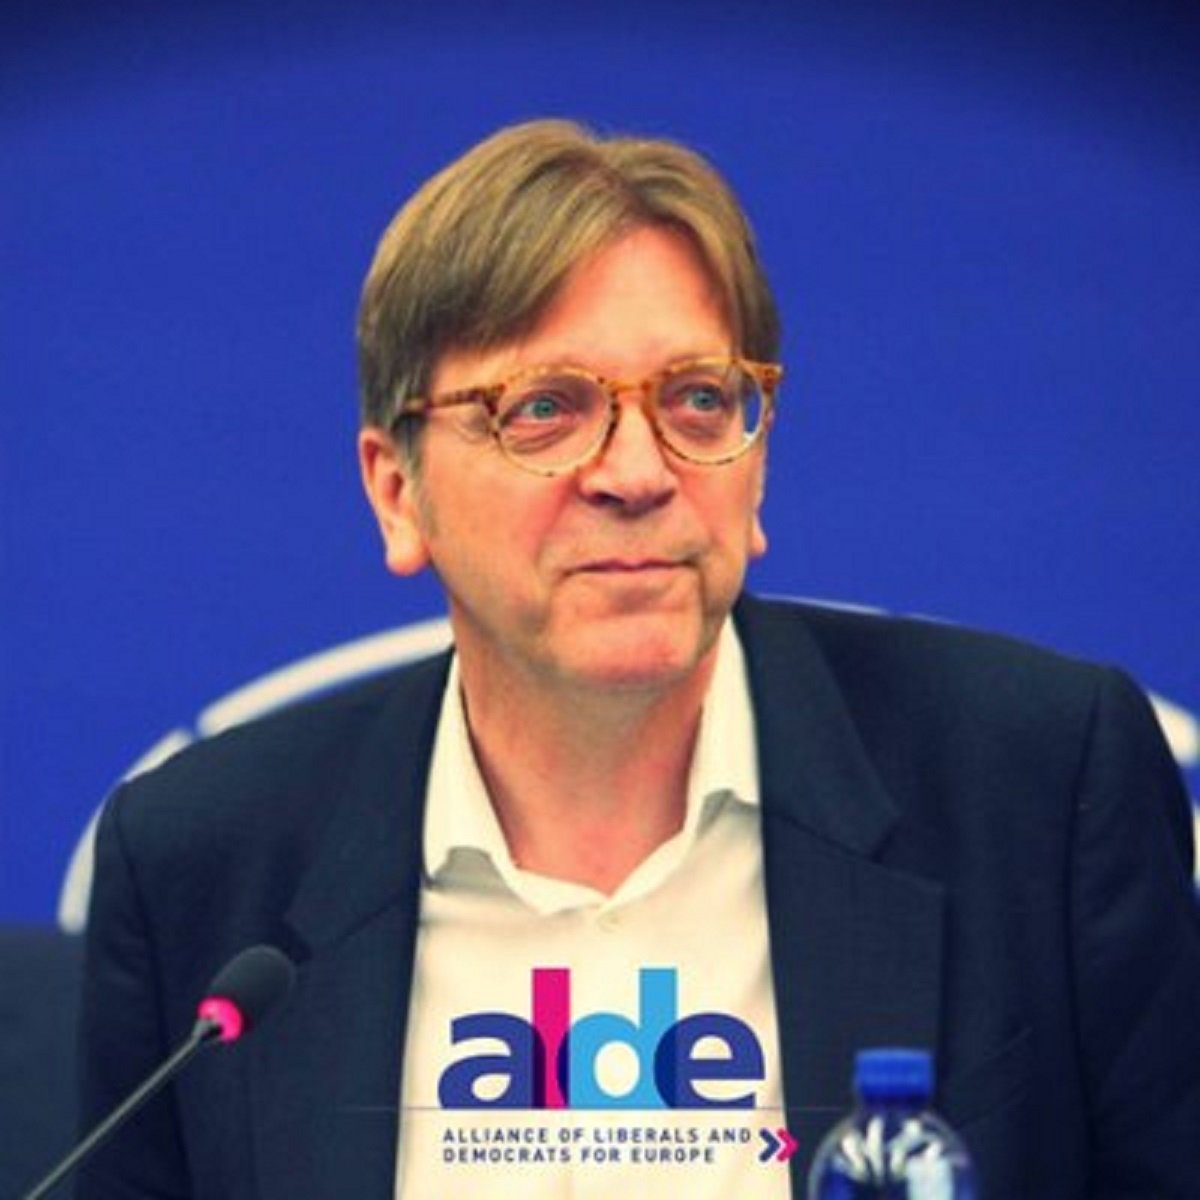 Belgian MEP Guy Verhofstadt criticises imprisonment of Catalan leaders